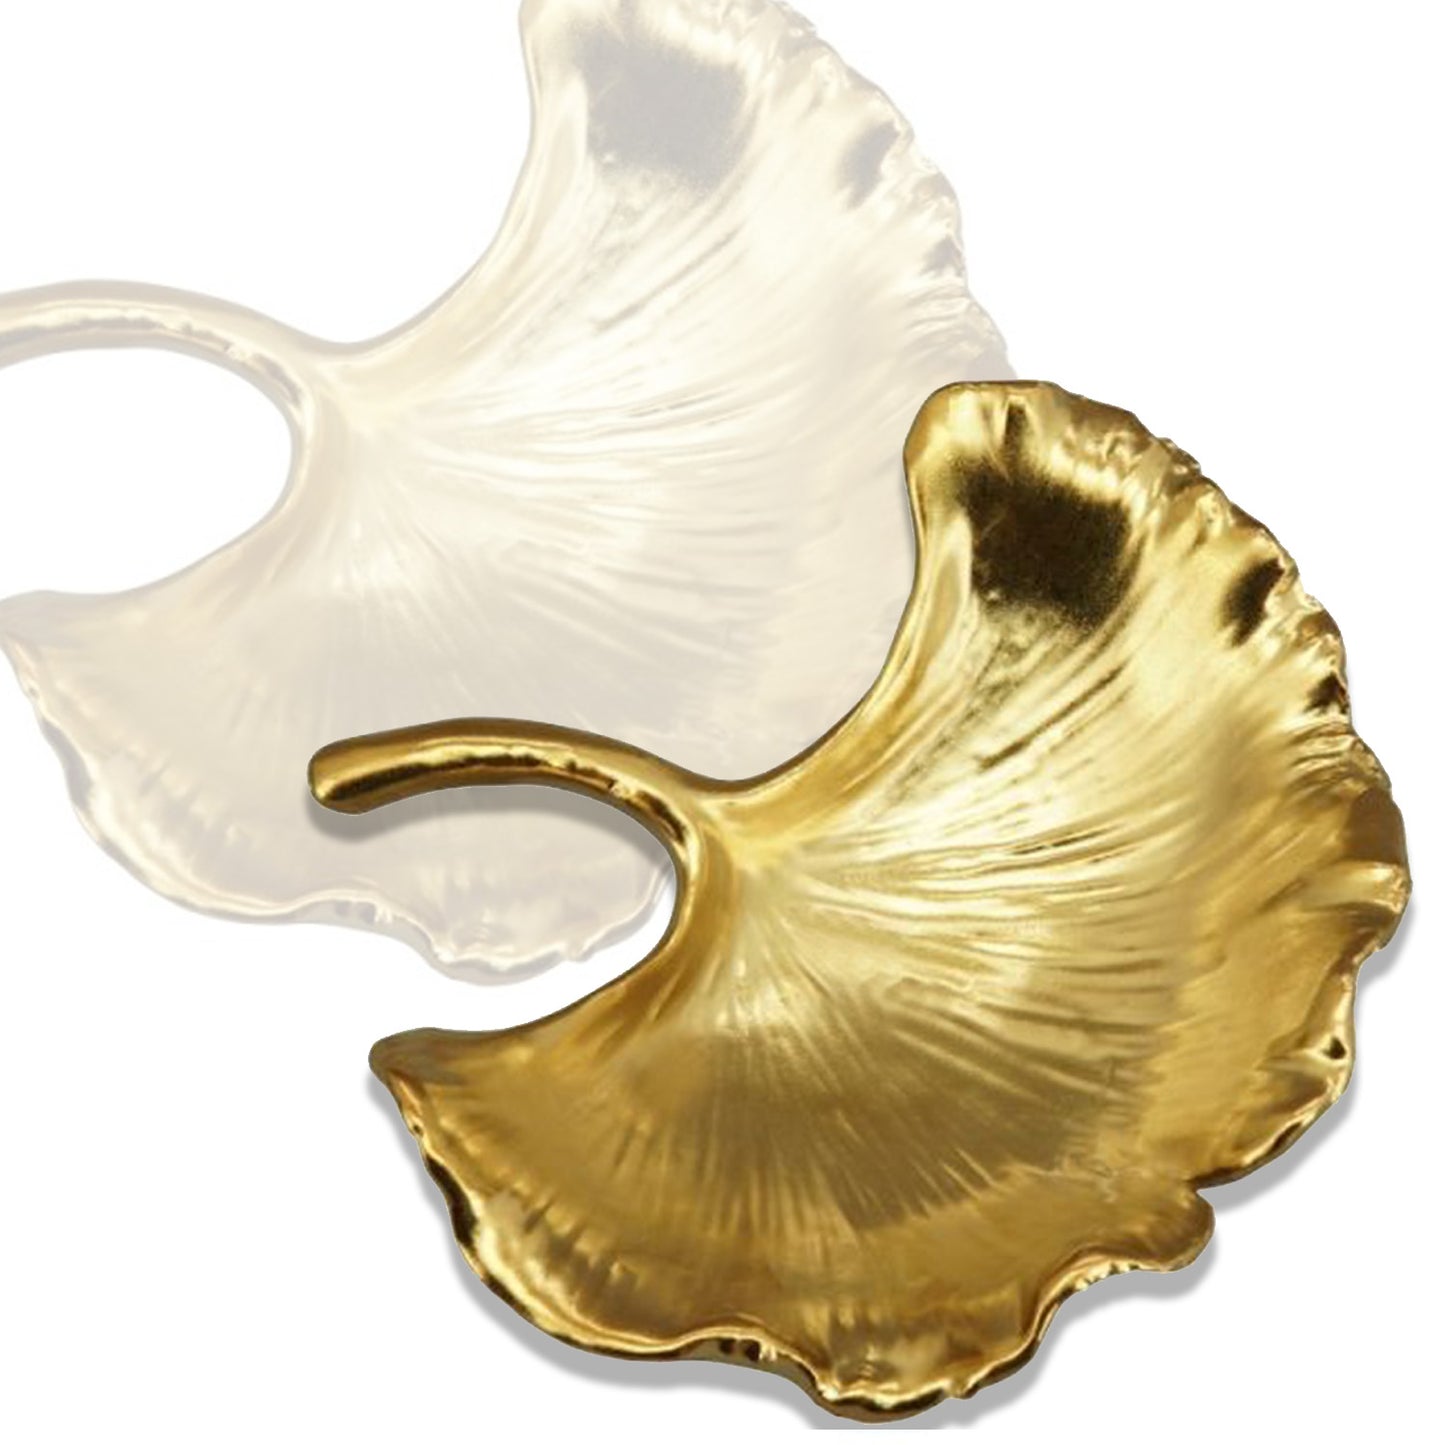 Ginkgo-Schale, Aurum, gold, Porzellan BxLxH 10,3x9,9x3,4 cm